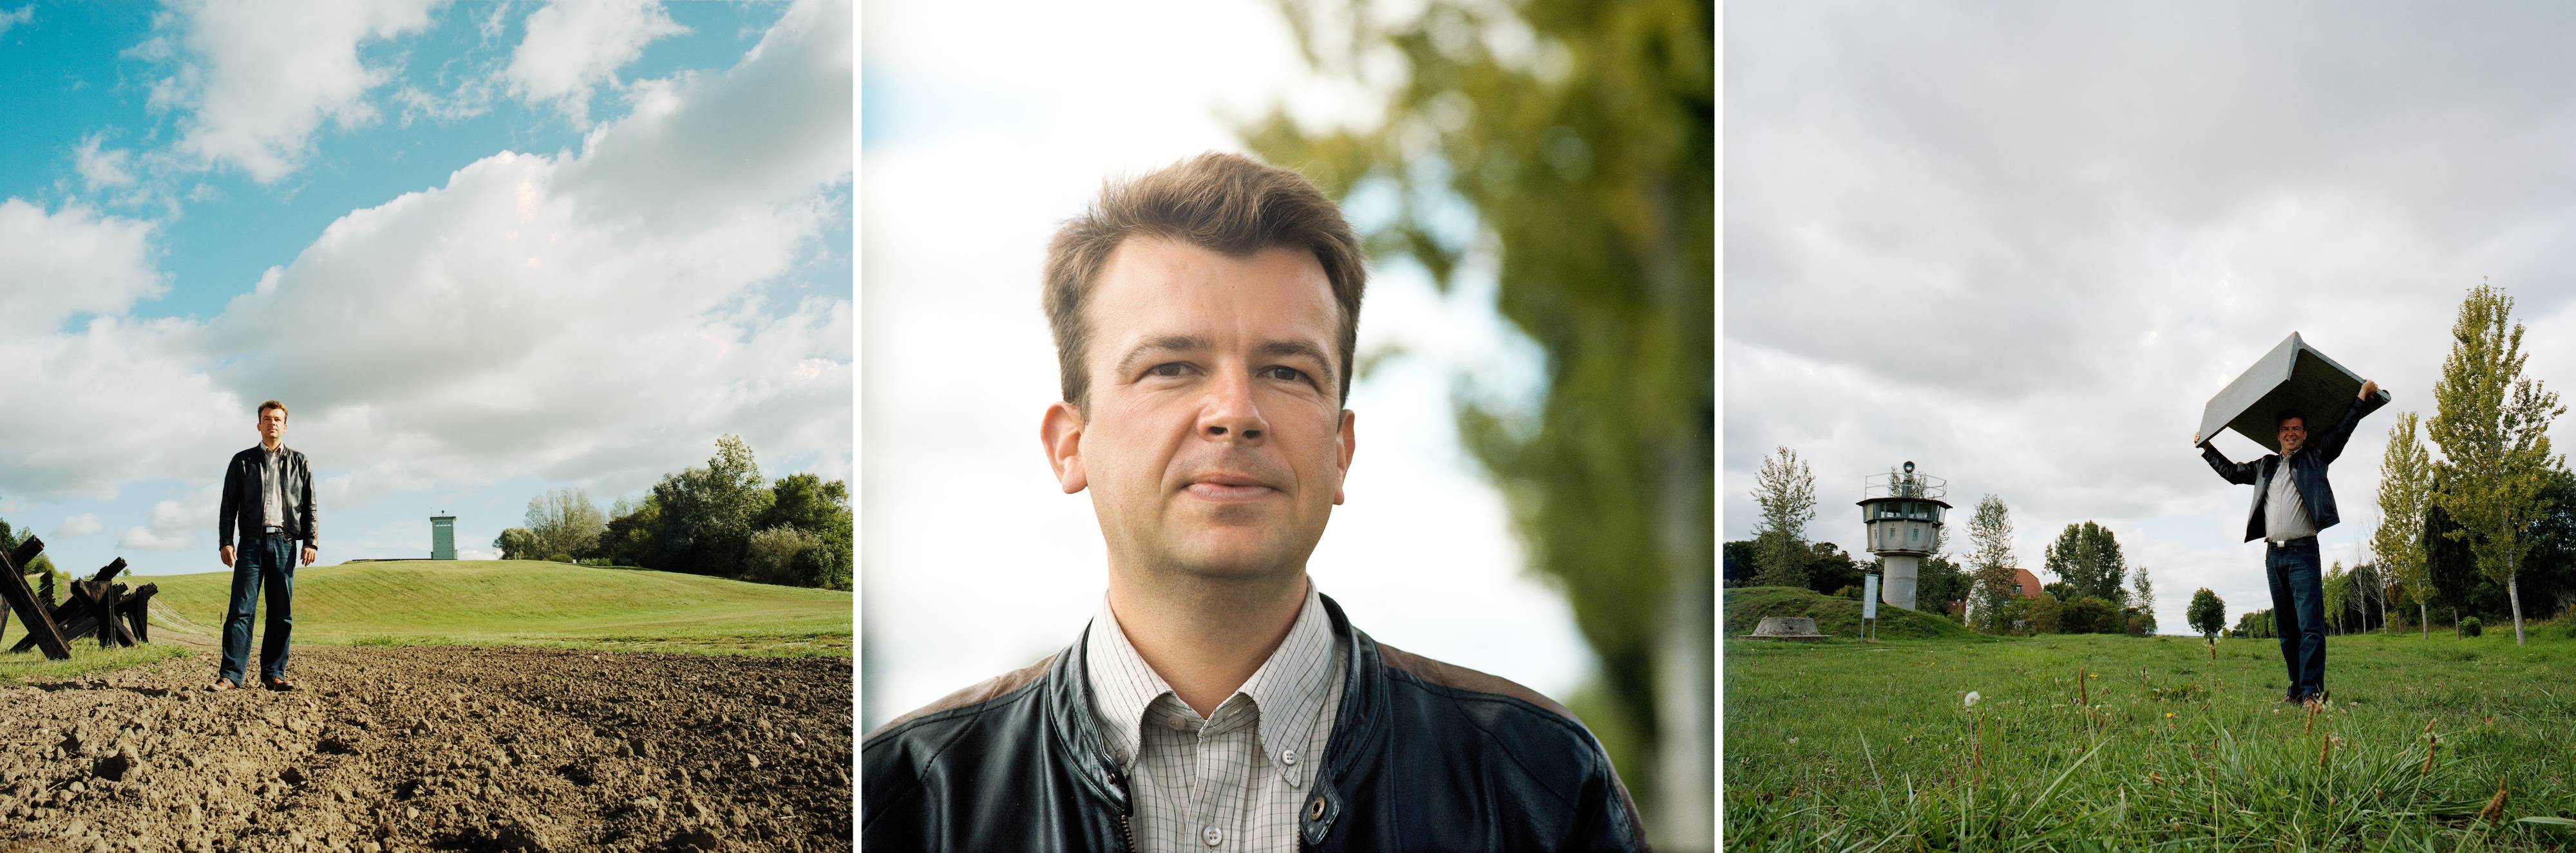 Jens Ackermann (FDP)